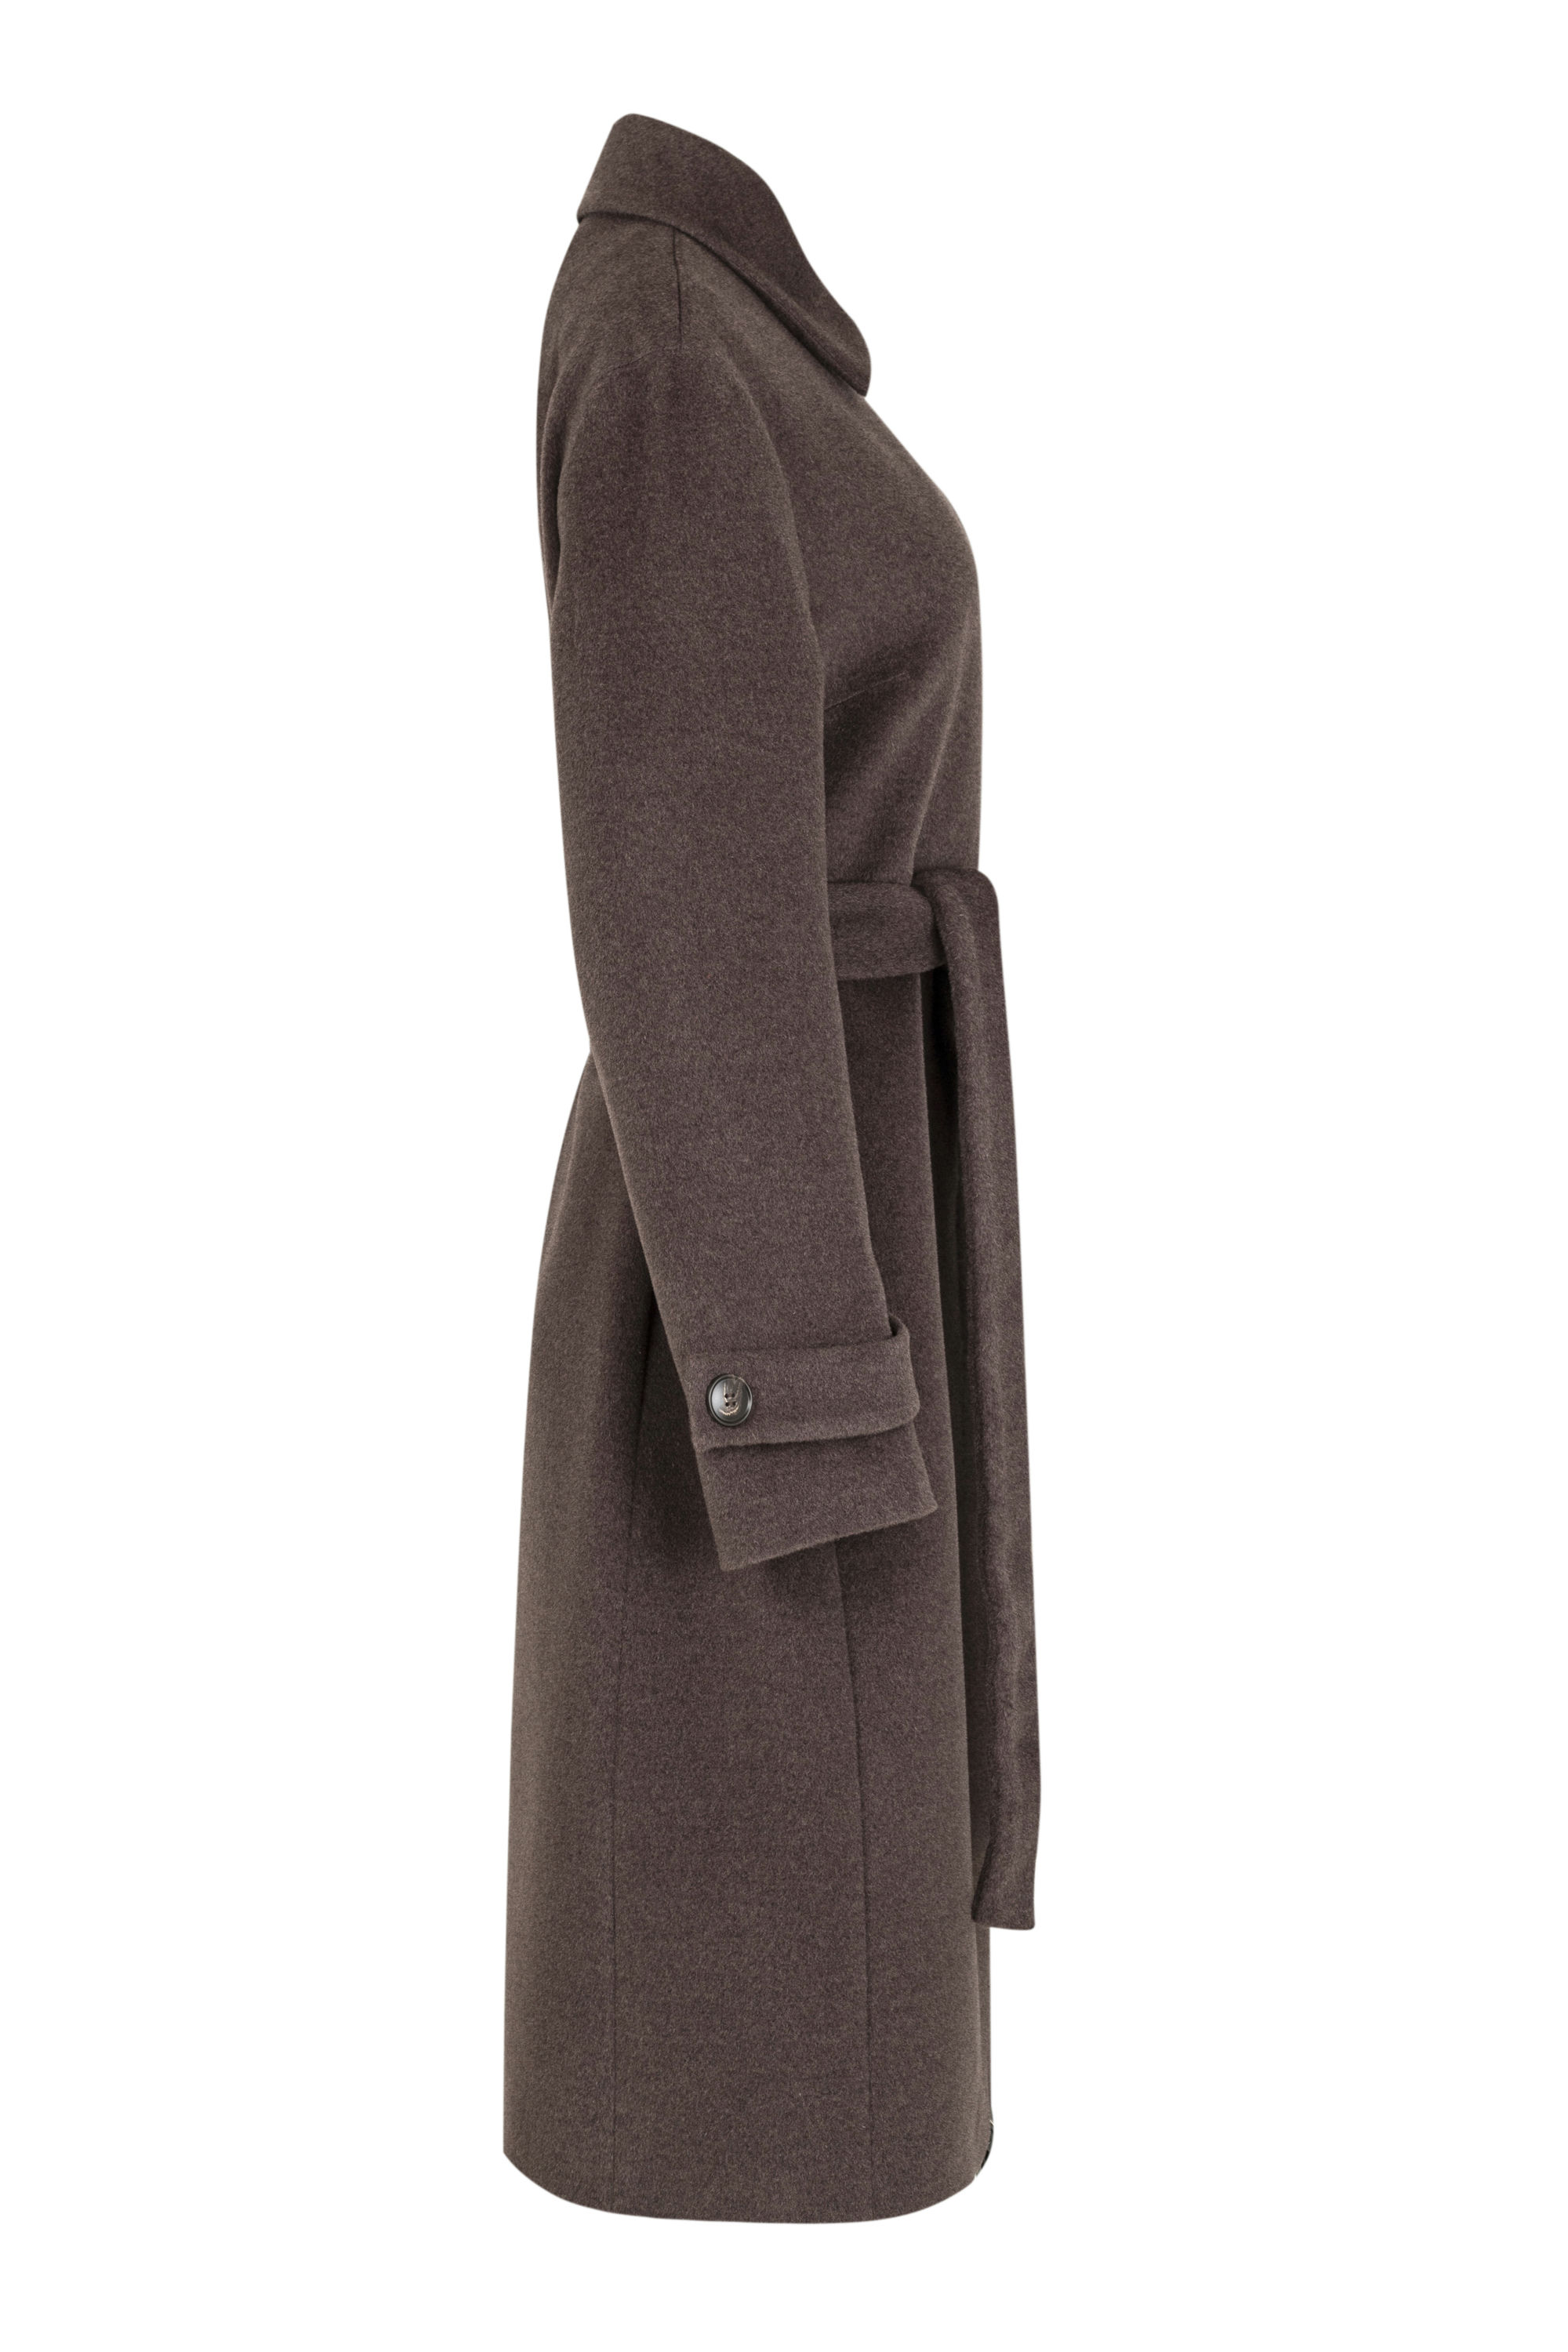 Пальто женское демисезонное 1-12778-1. Фото 6.